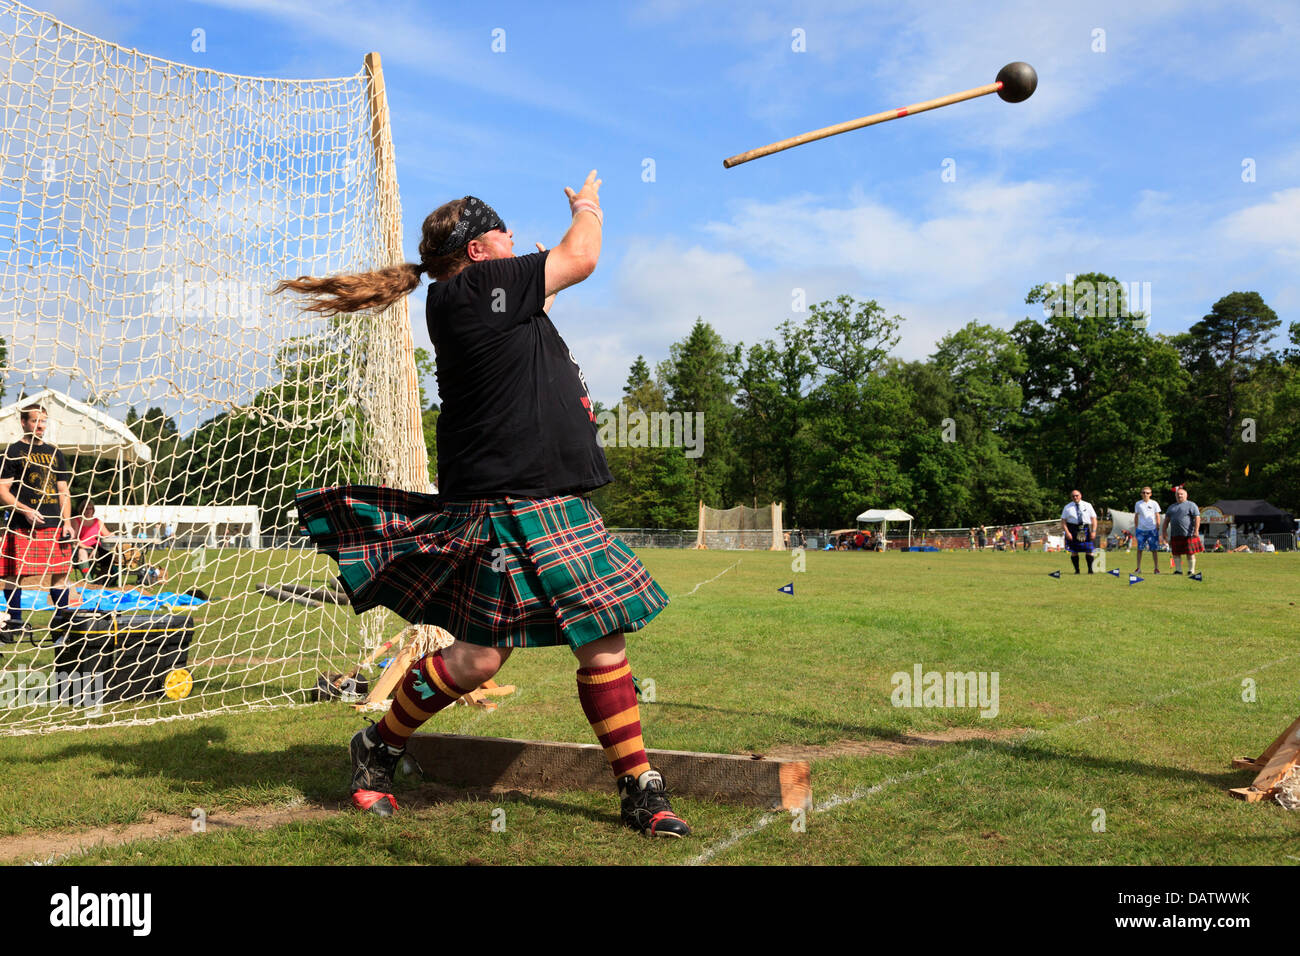 Konkurrent im schottischen Highland Games 22 Pfund Hammer, eine traditionelle schottische Wettbewerb werfen. Stockfoto